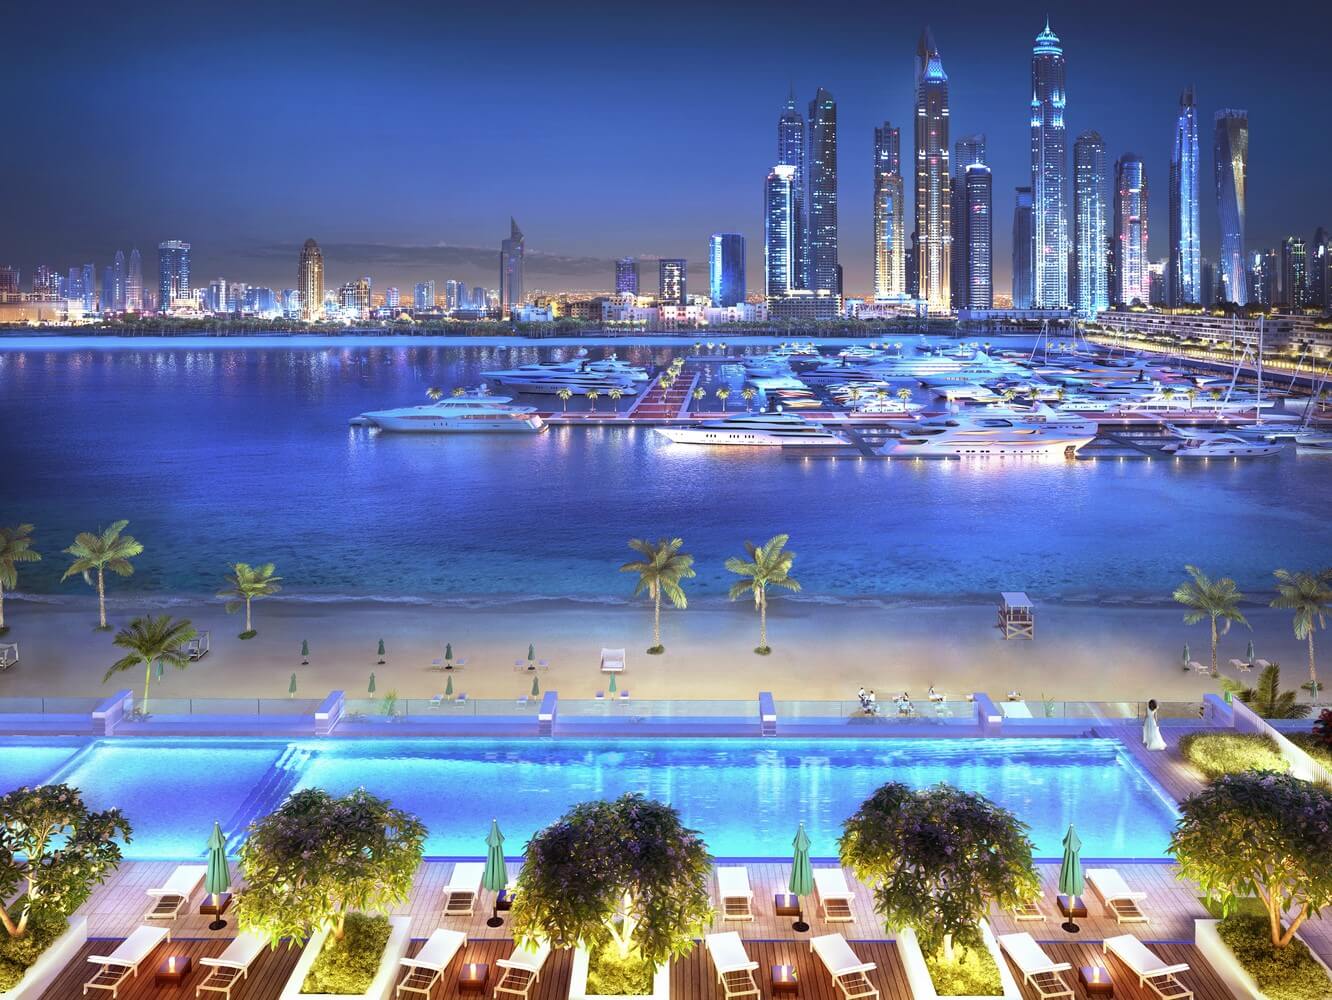 Emax Real Estate  este incantata sa va  prezinte acest apartament elegant, modern și nou, în Palm Dubai pe faimoasa plajă iconică Emaar.